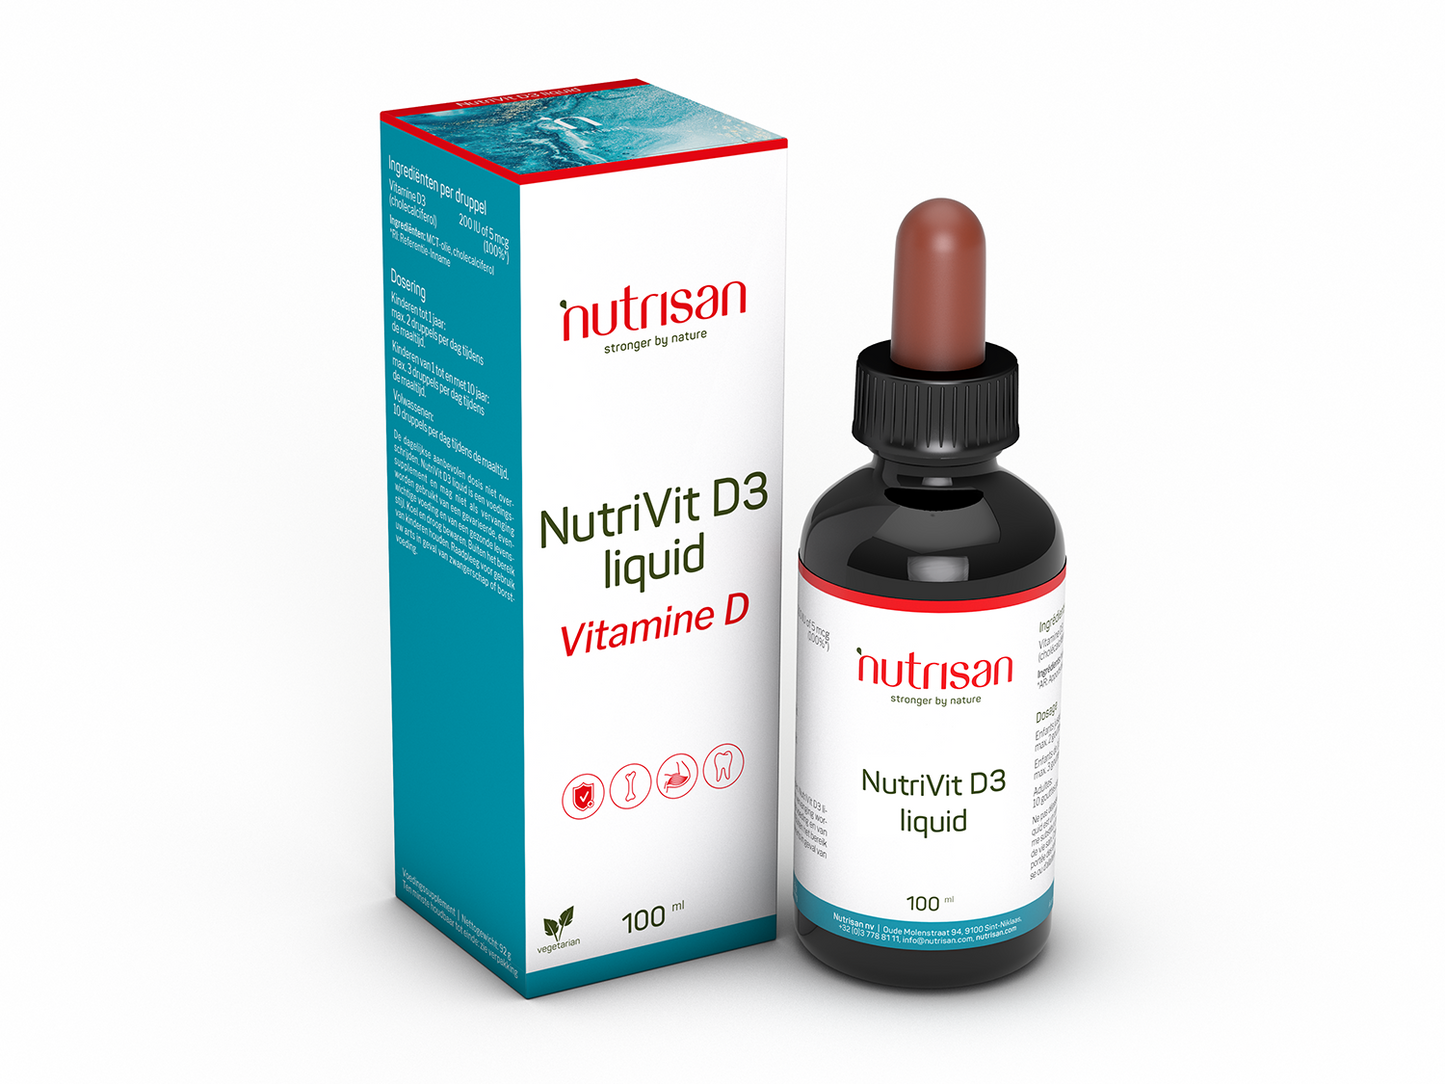 Nutrisan NutriVit D3 liquid - Vitamine D - Supplement voor botten en spieren